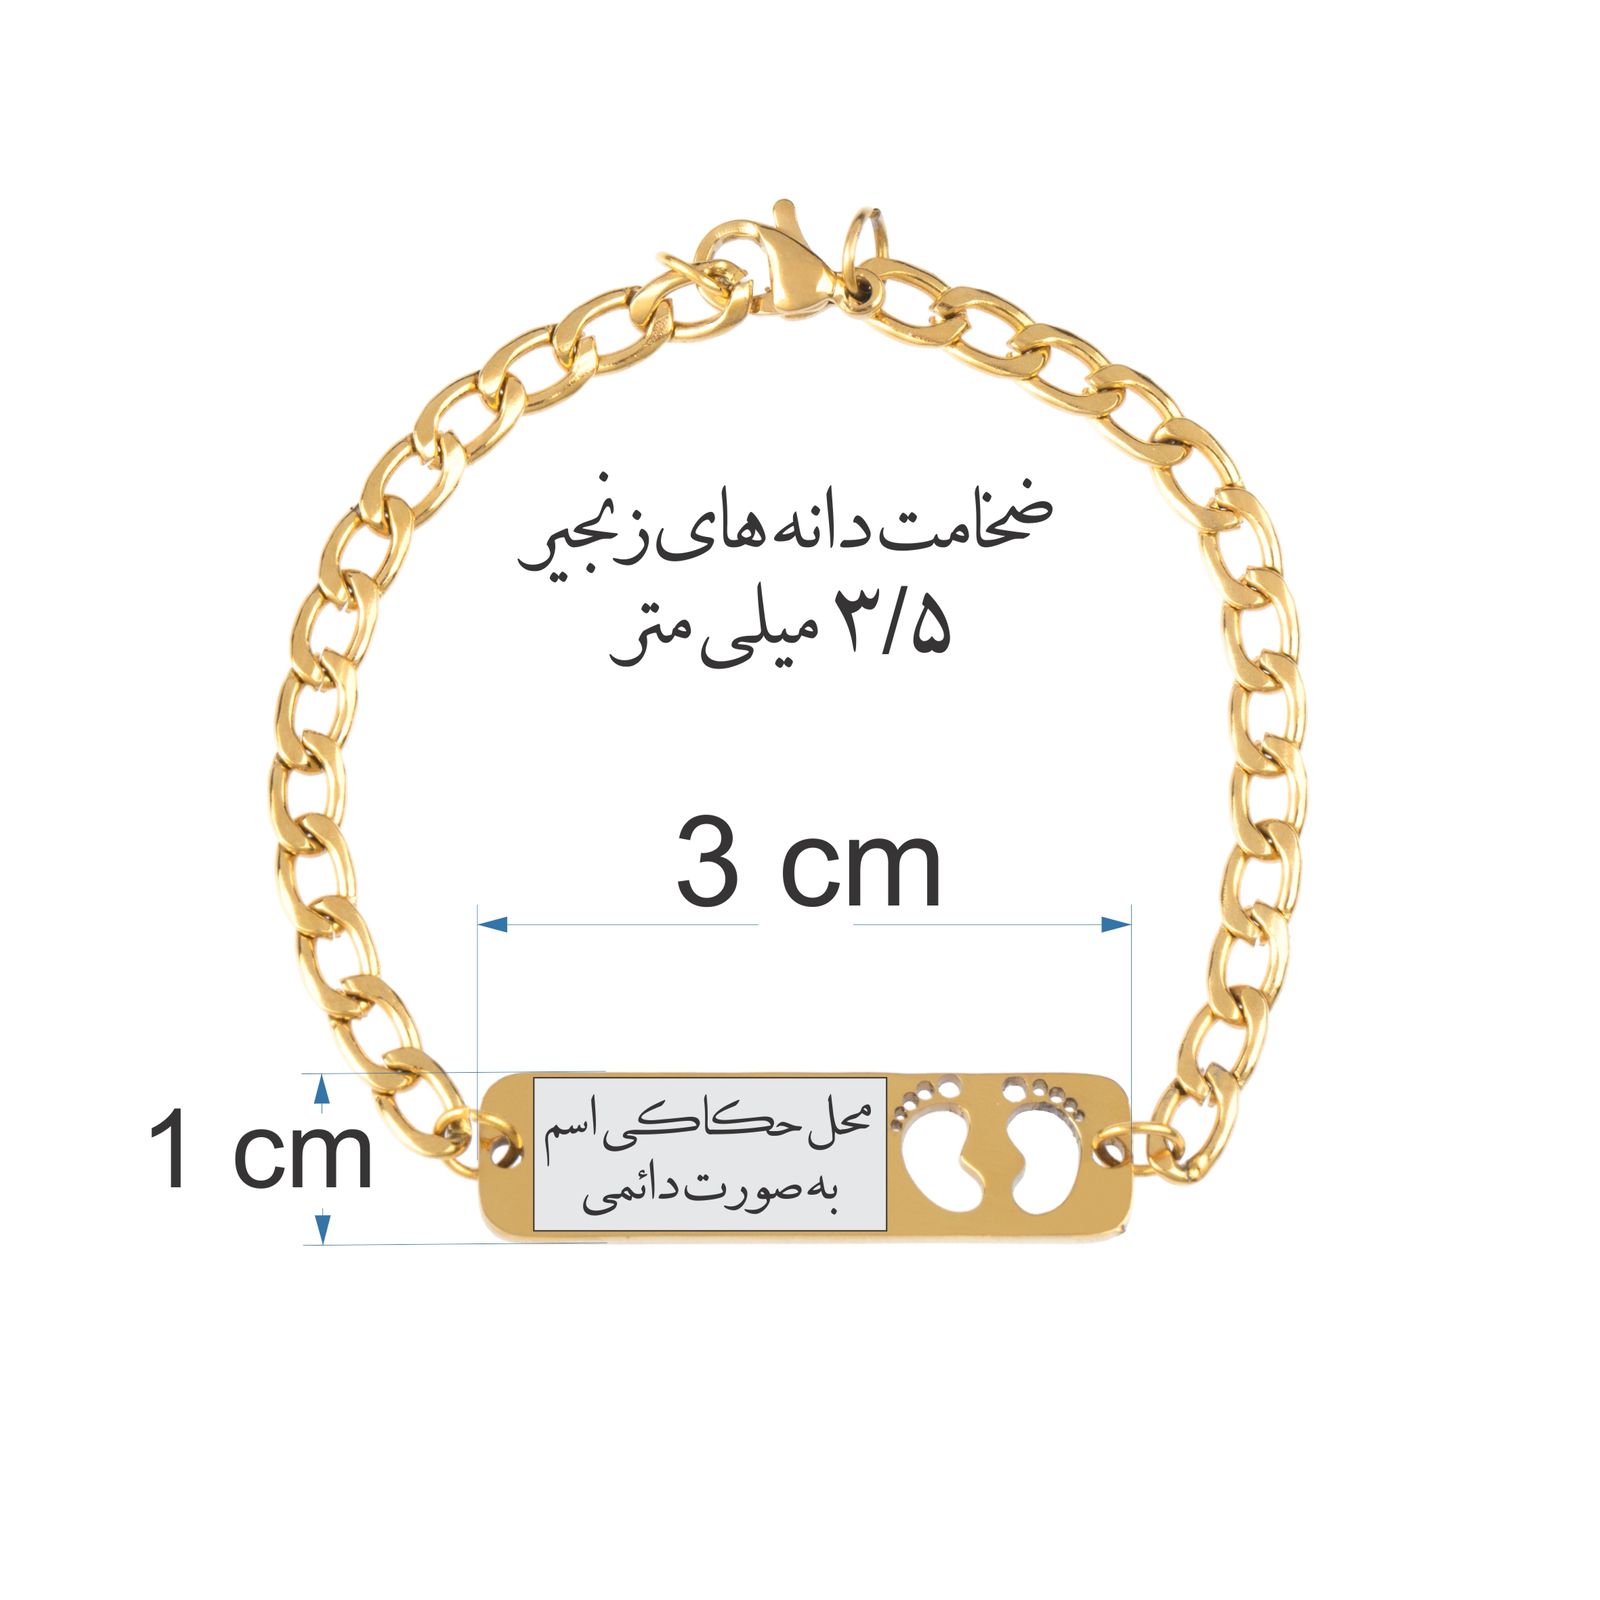 دستبند دخترانه گيلواره زراوشان مدل اسم آدا کد B82 -  - 2